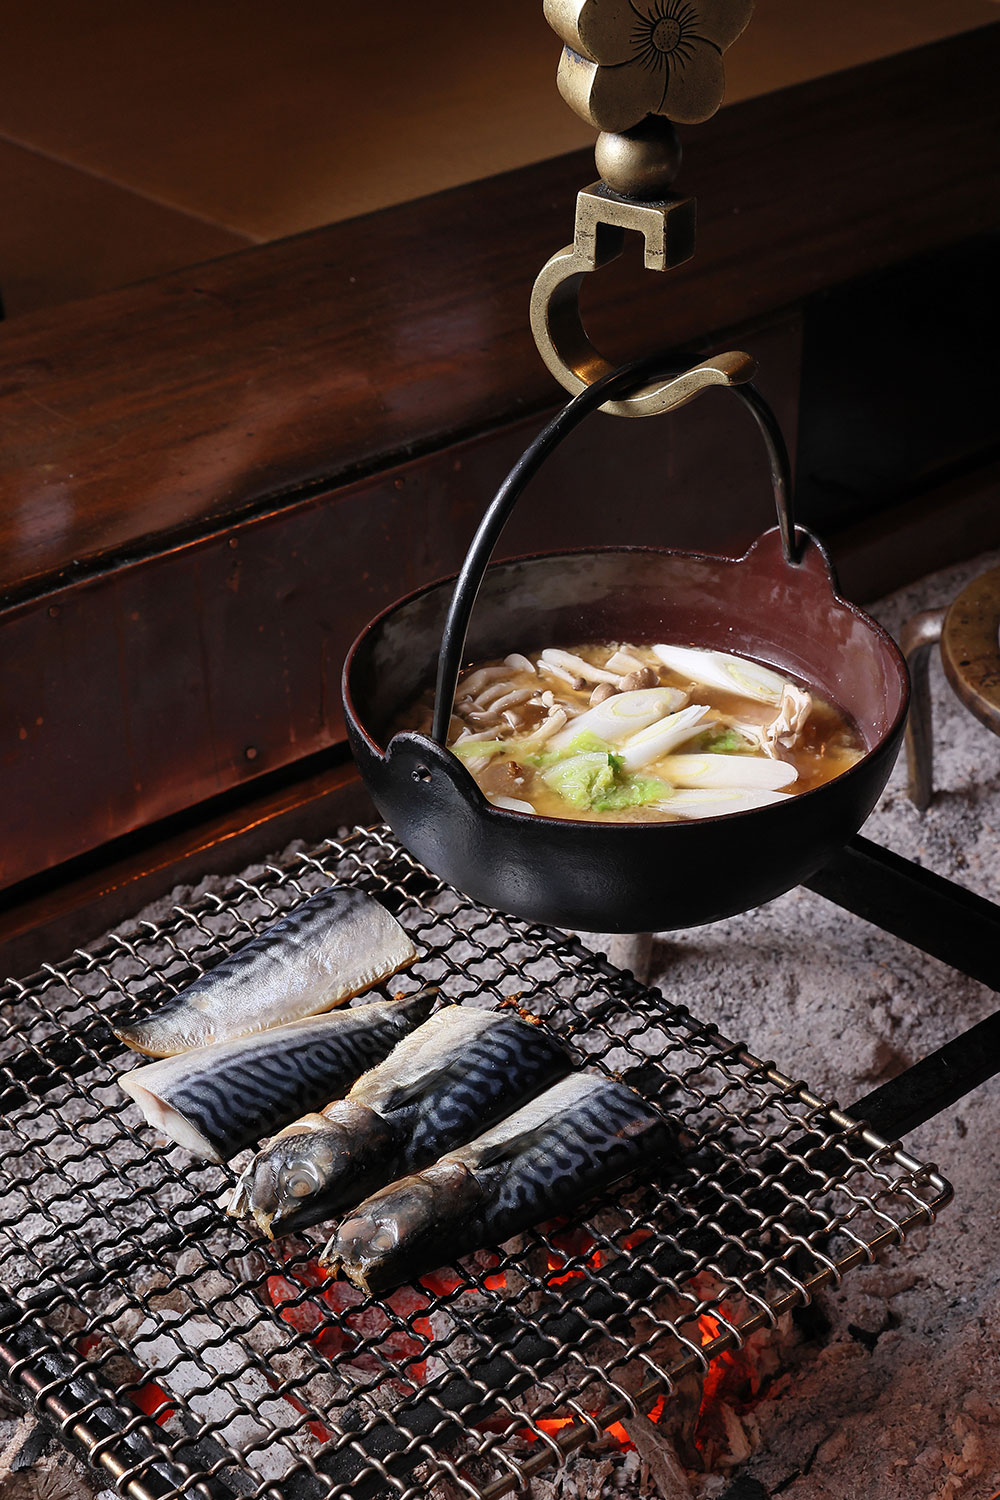 鯖の文化干しは無添加。味噌汁をはじめ朝食では四季折々、旬の食材がふんだんに提供される。